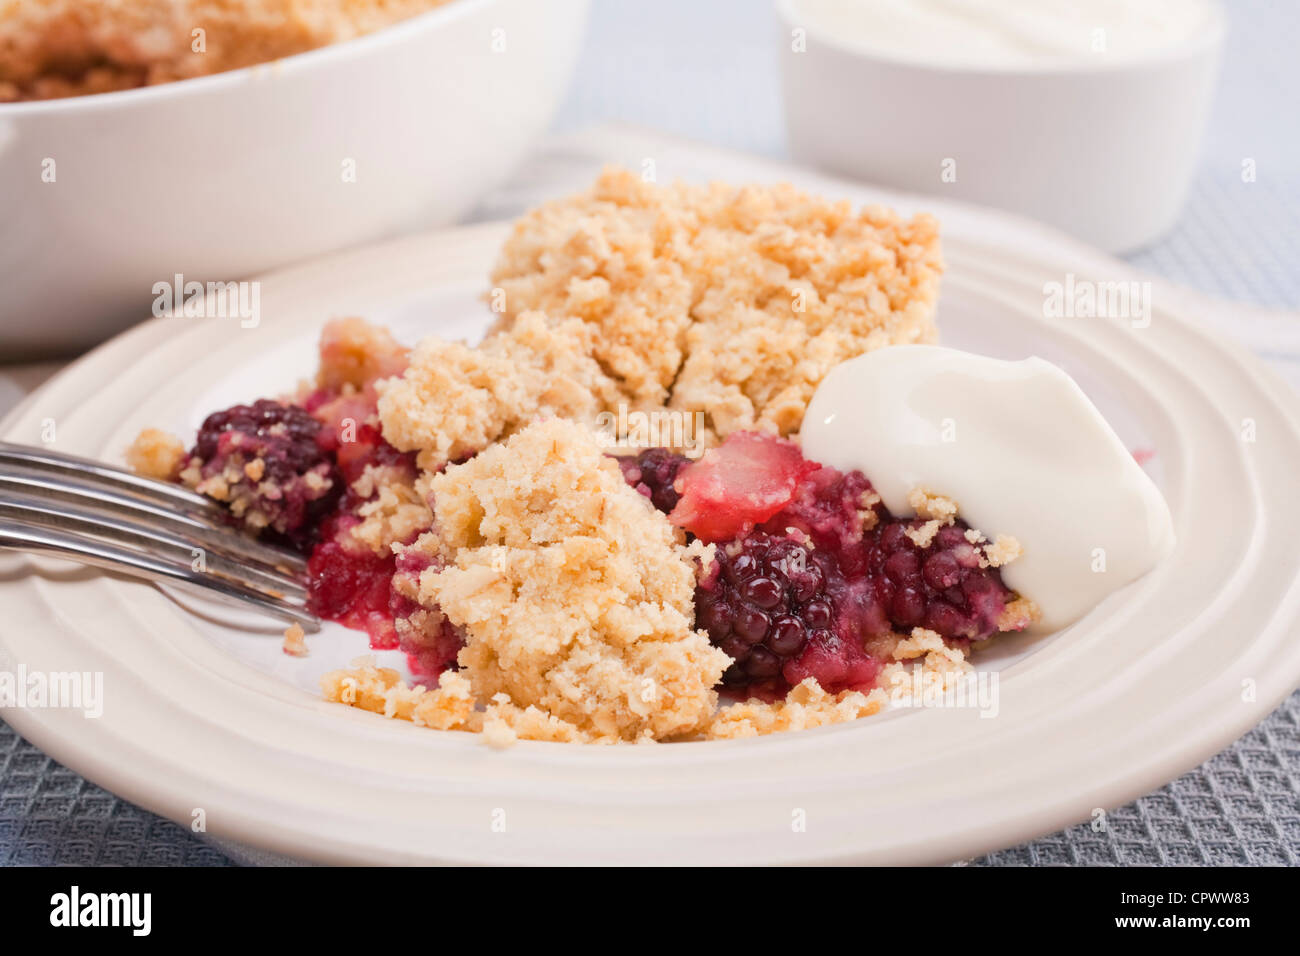 Home cotta di blackberry e apple crumble con una cucchiaiata di yogurt greco. Rendere la maggior parte di succosa frutta d'autunno. Foto Stock